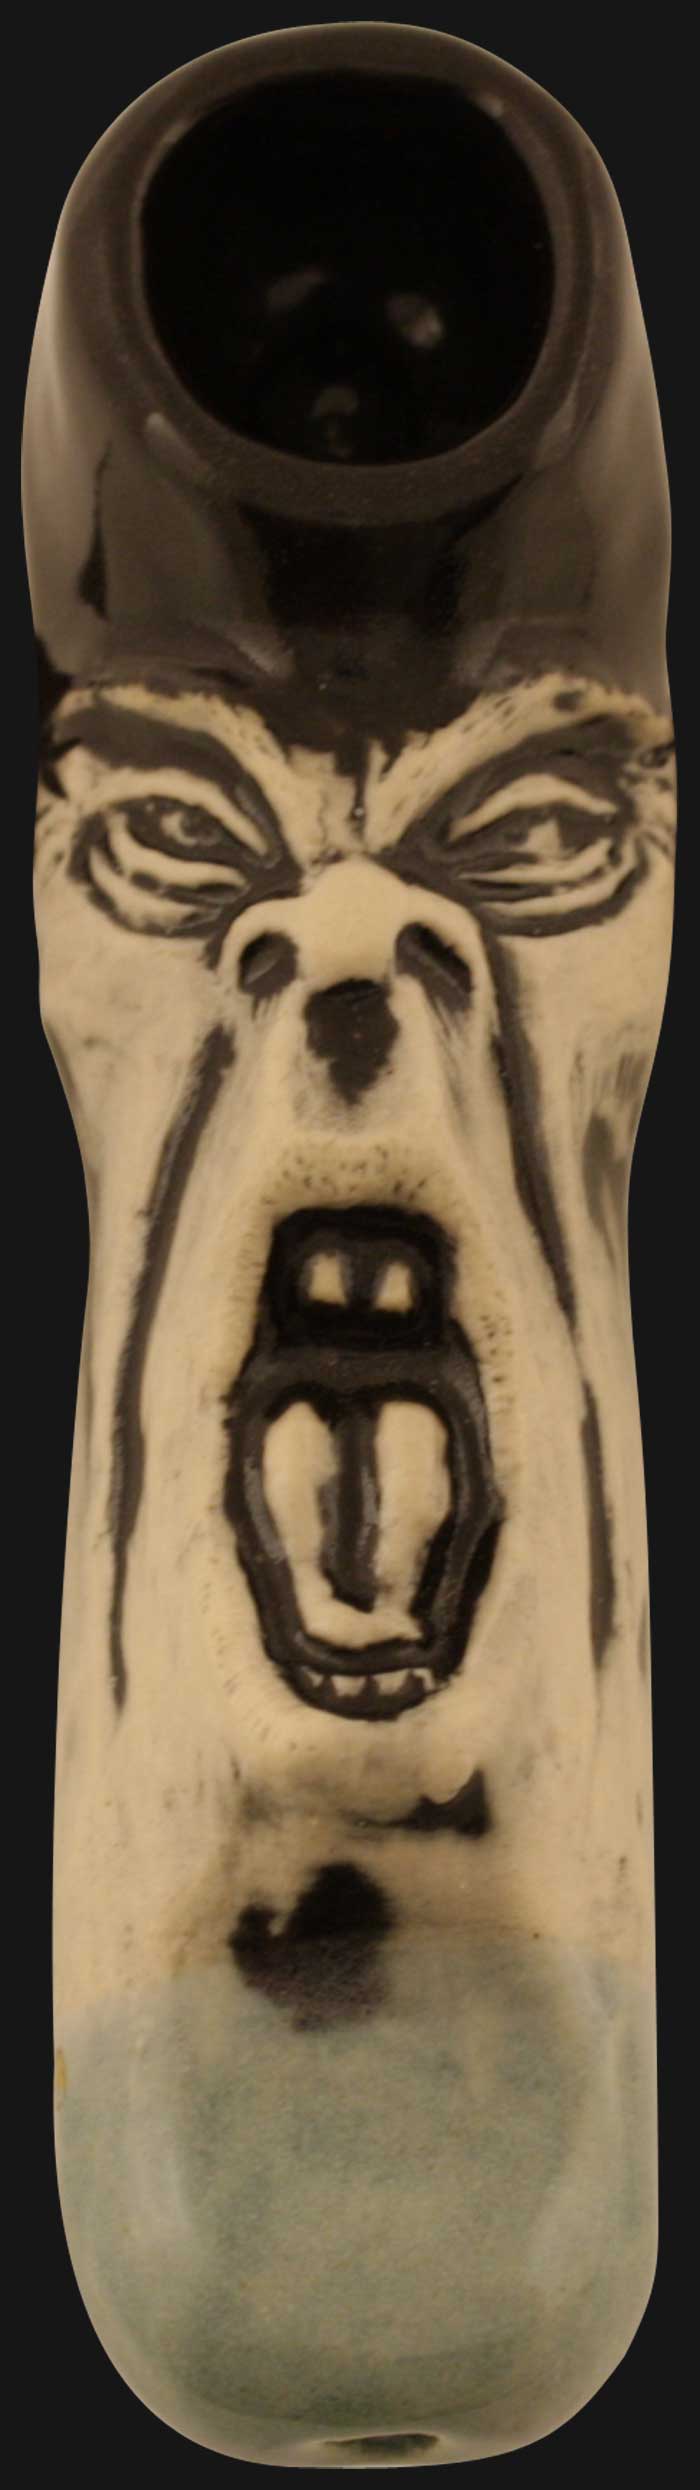 JM Ceramics - Screamer Skull 4-Inch Ceramic Hand Pipe